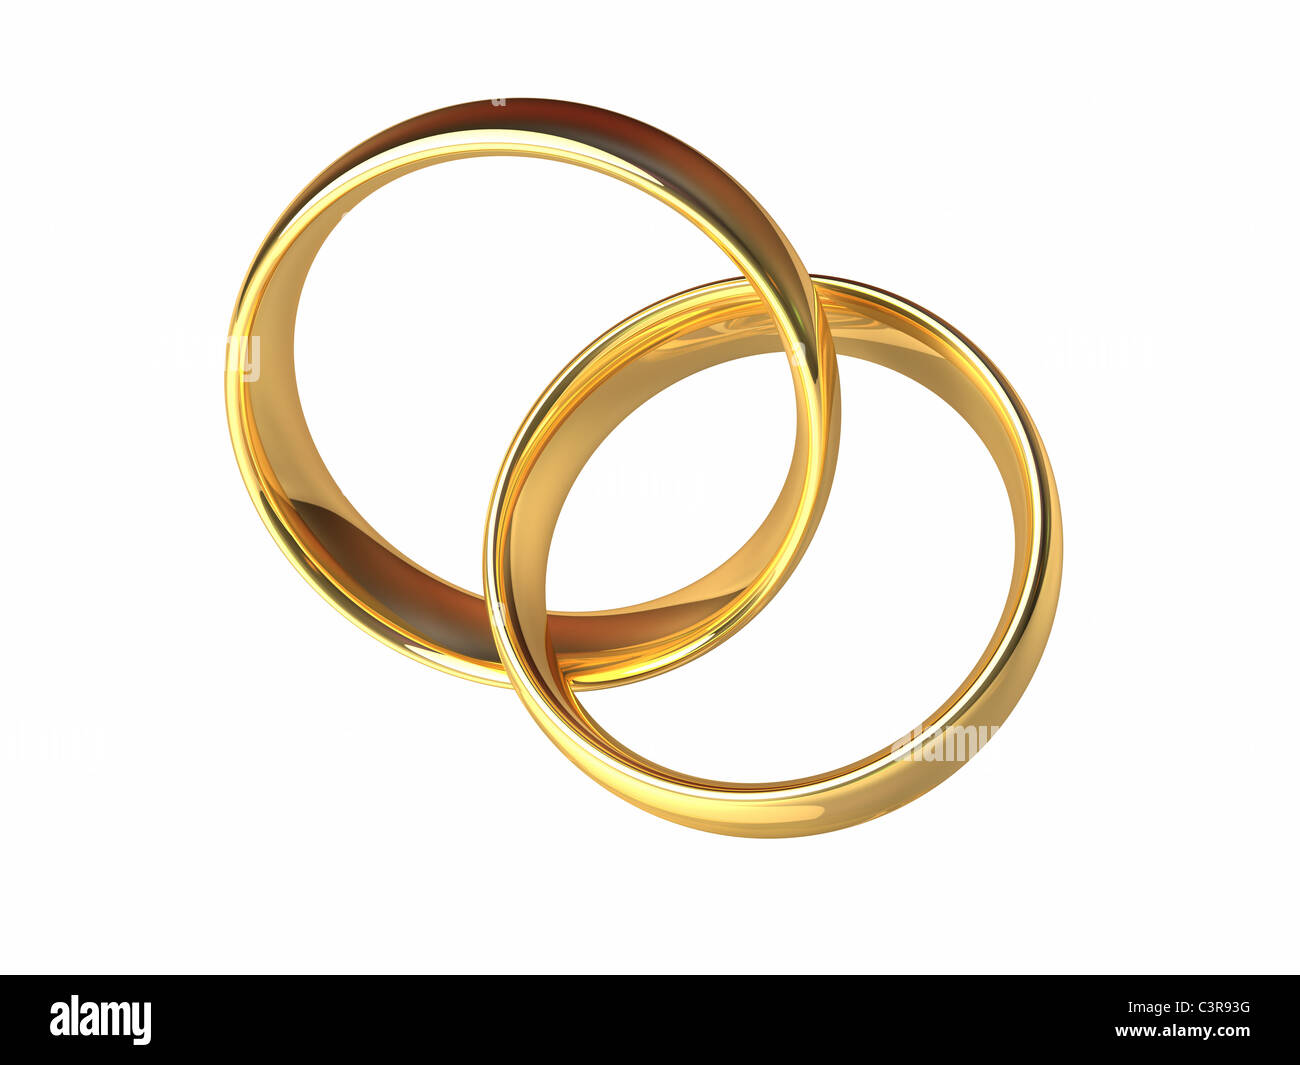 Zwei goldene Ringe verbunden miteinander, geschnürte Ringe, isolierten  weißen Hintergrund, 3d render Stockfotografie - Alamy